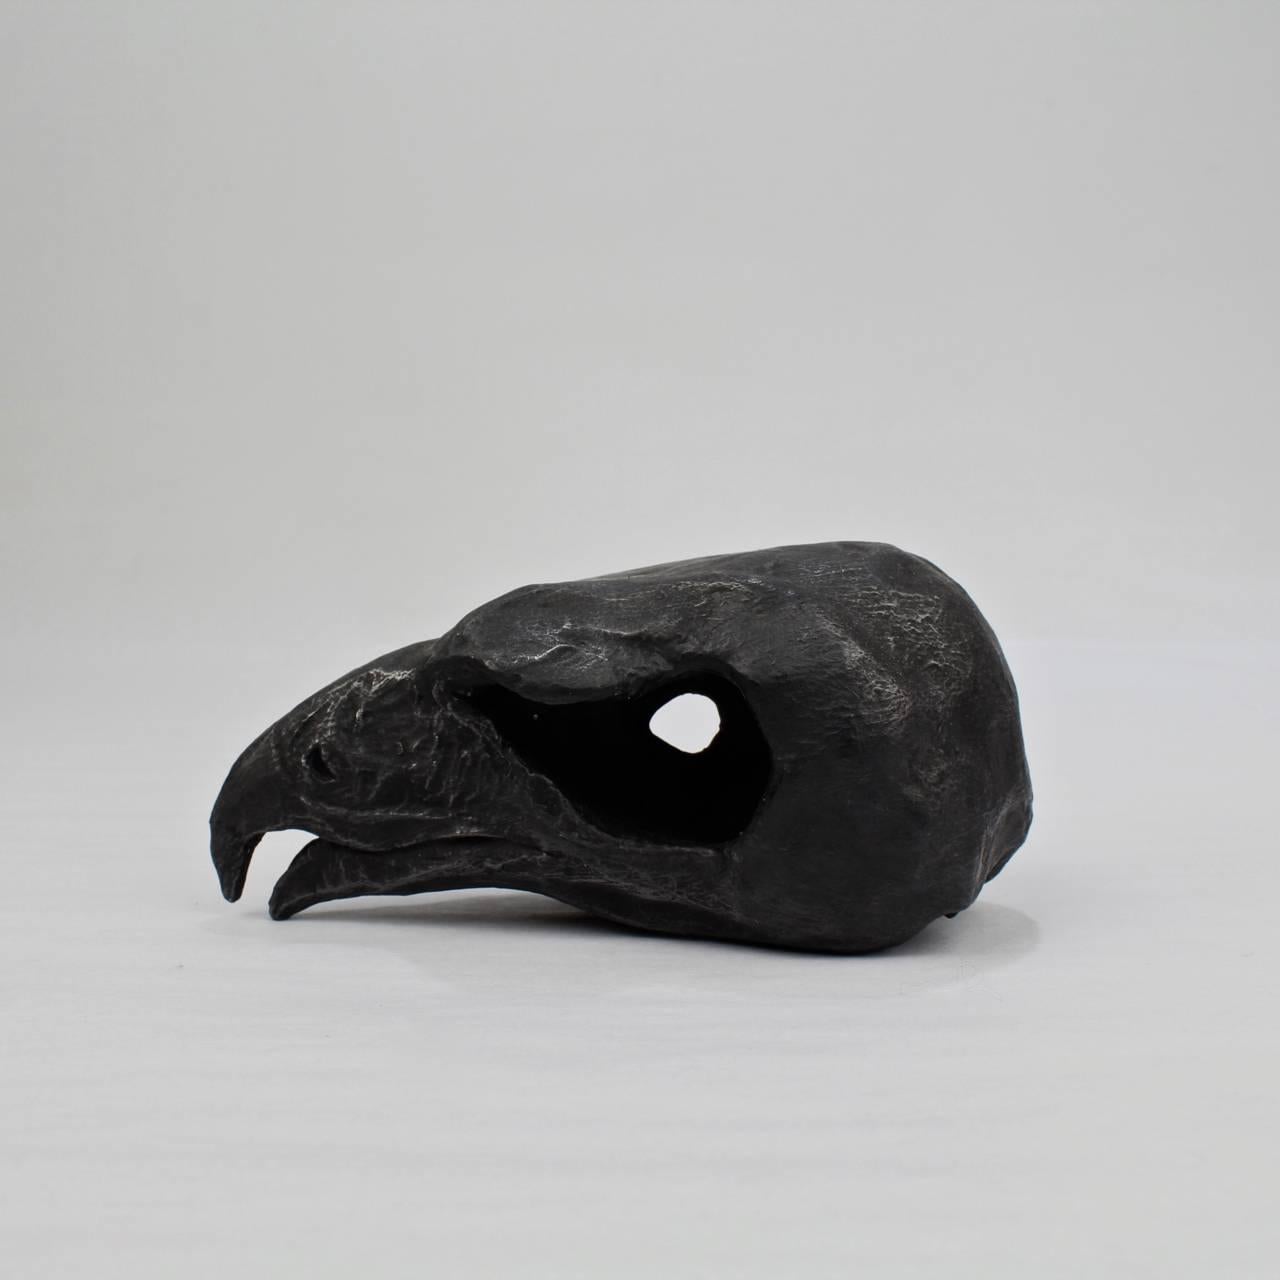 Titre : Sans titre.

Une sculpture unique en terre cuite peinte en noir d'un crâne de faucon par Darla Jackson.

Date : 2016.

Longueur : environ 4 pouces.

Signé à la base D. Jackson.

Darla Jackson est née en Pennsylvanie en 1981. Elle a